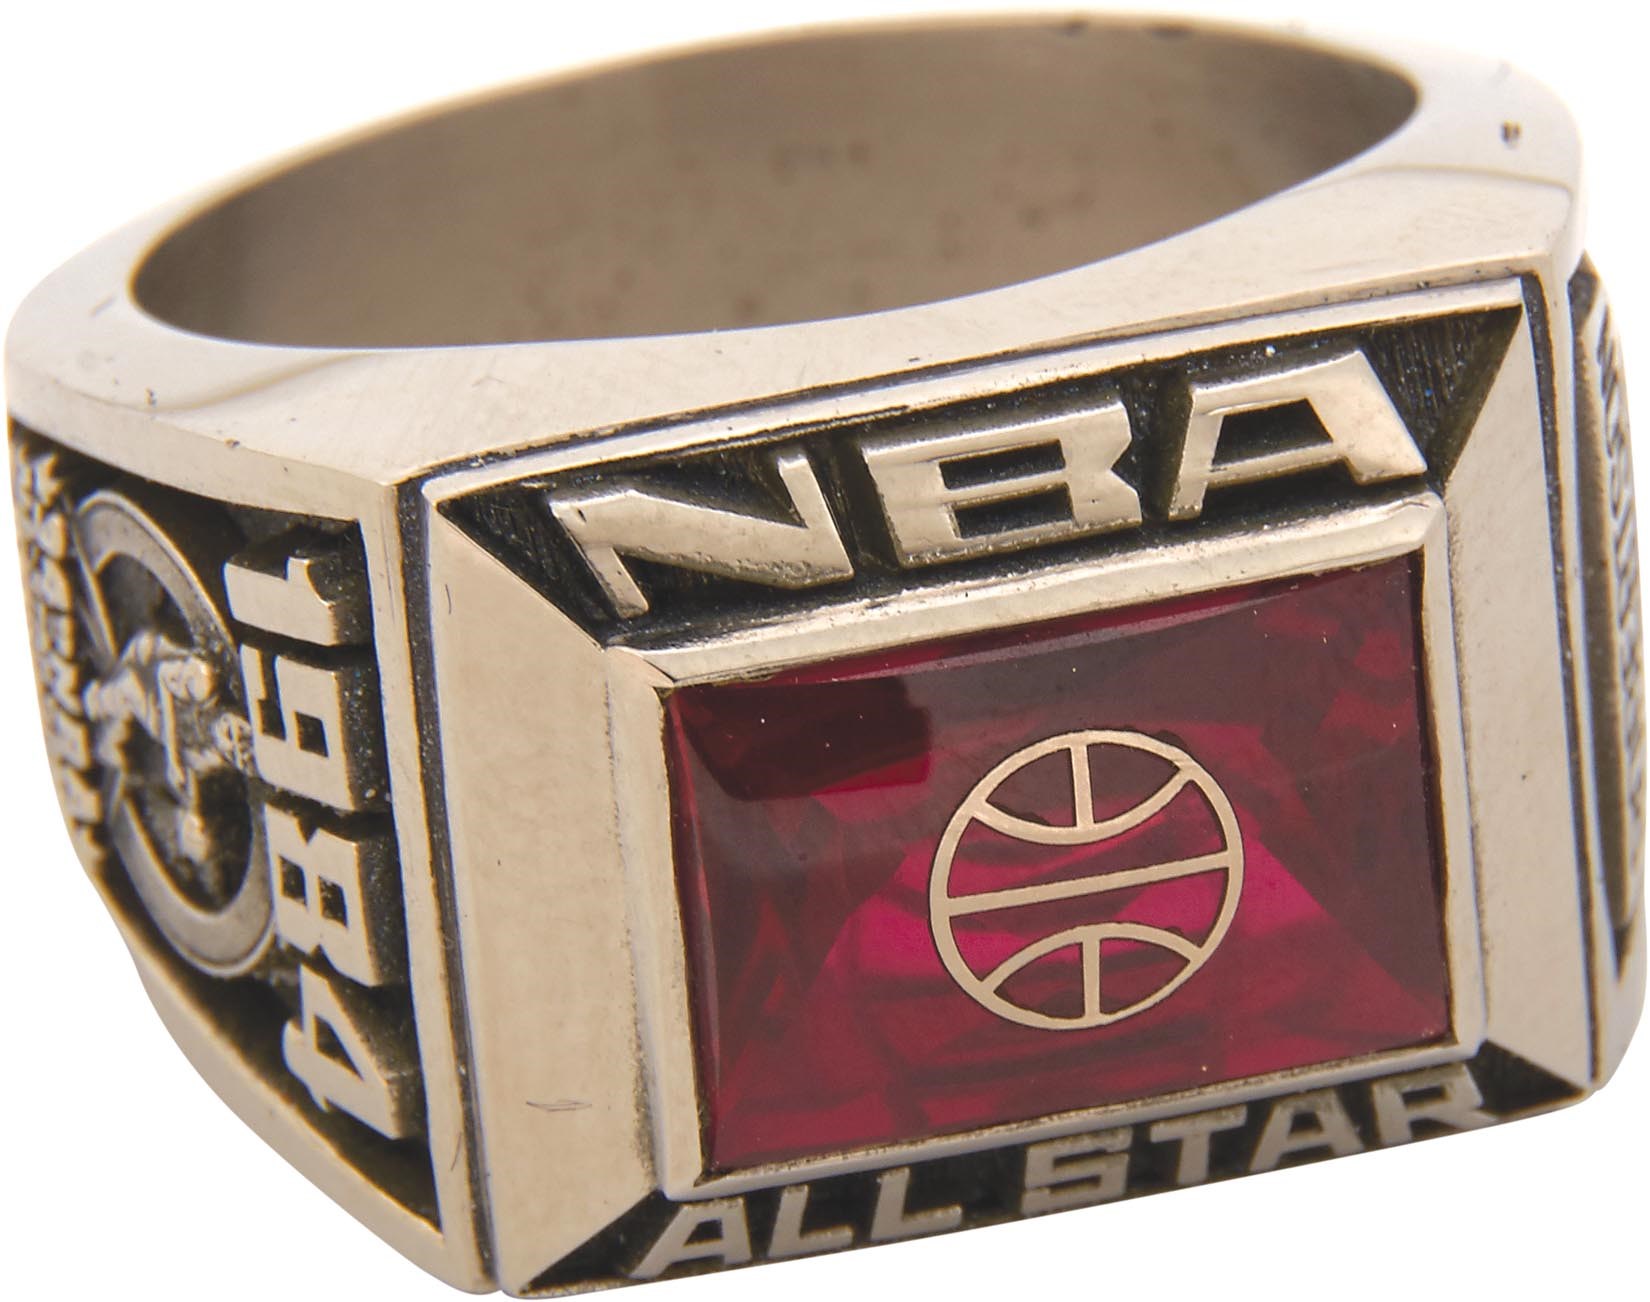 The Oscar Robertson Collection - 1984 Oscar Robertson NBA All-Star Game Ring